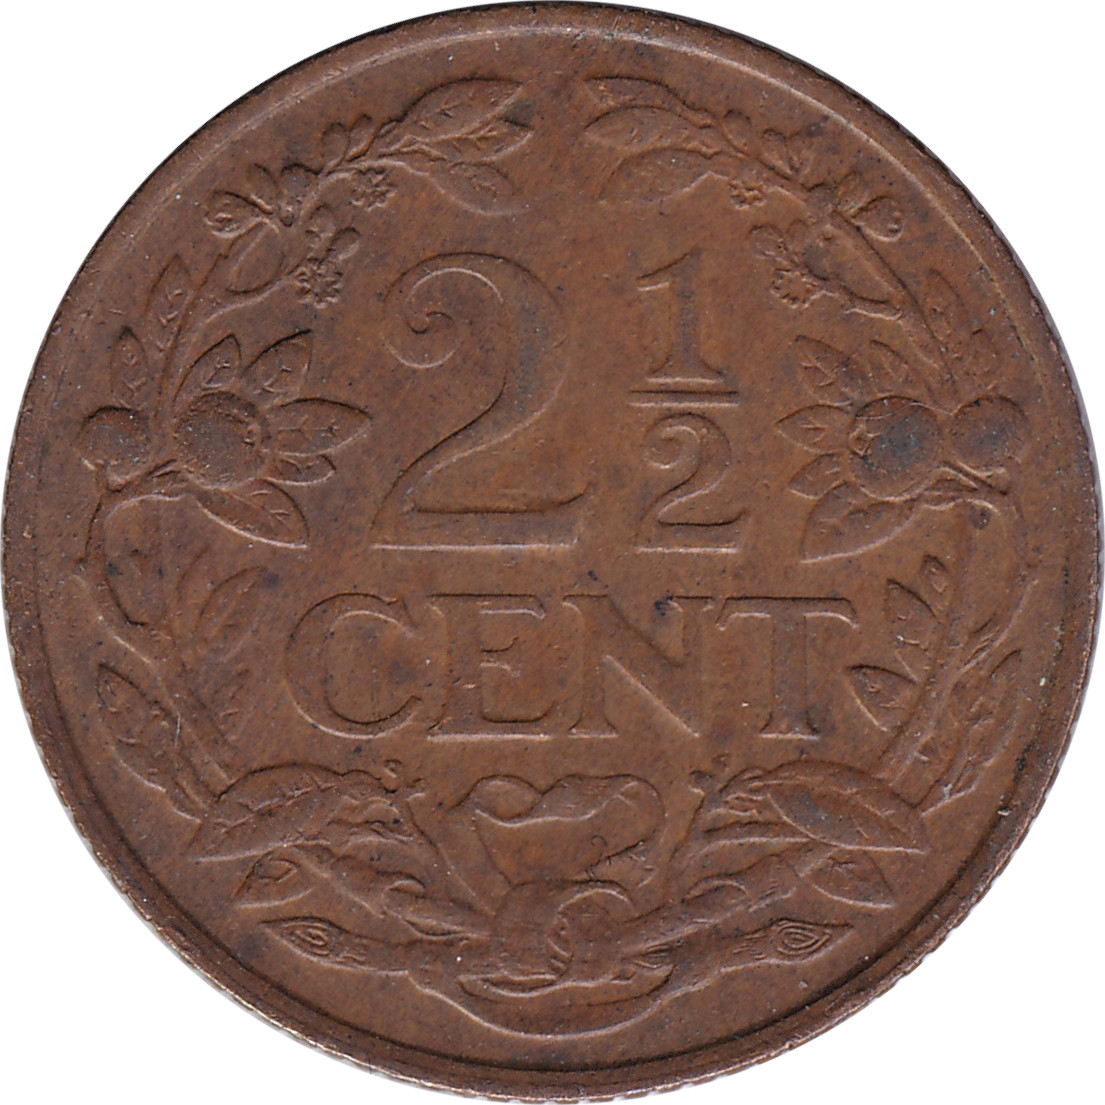 2 1/2 cents - Wilhelmina I